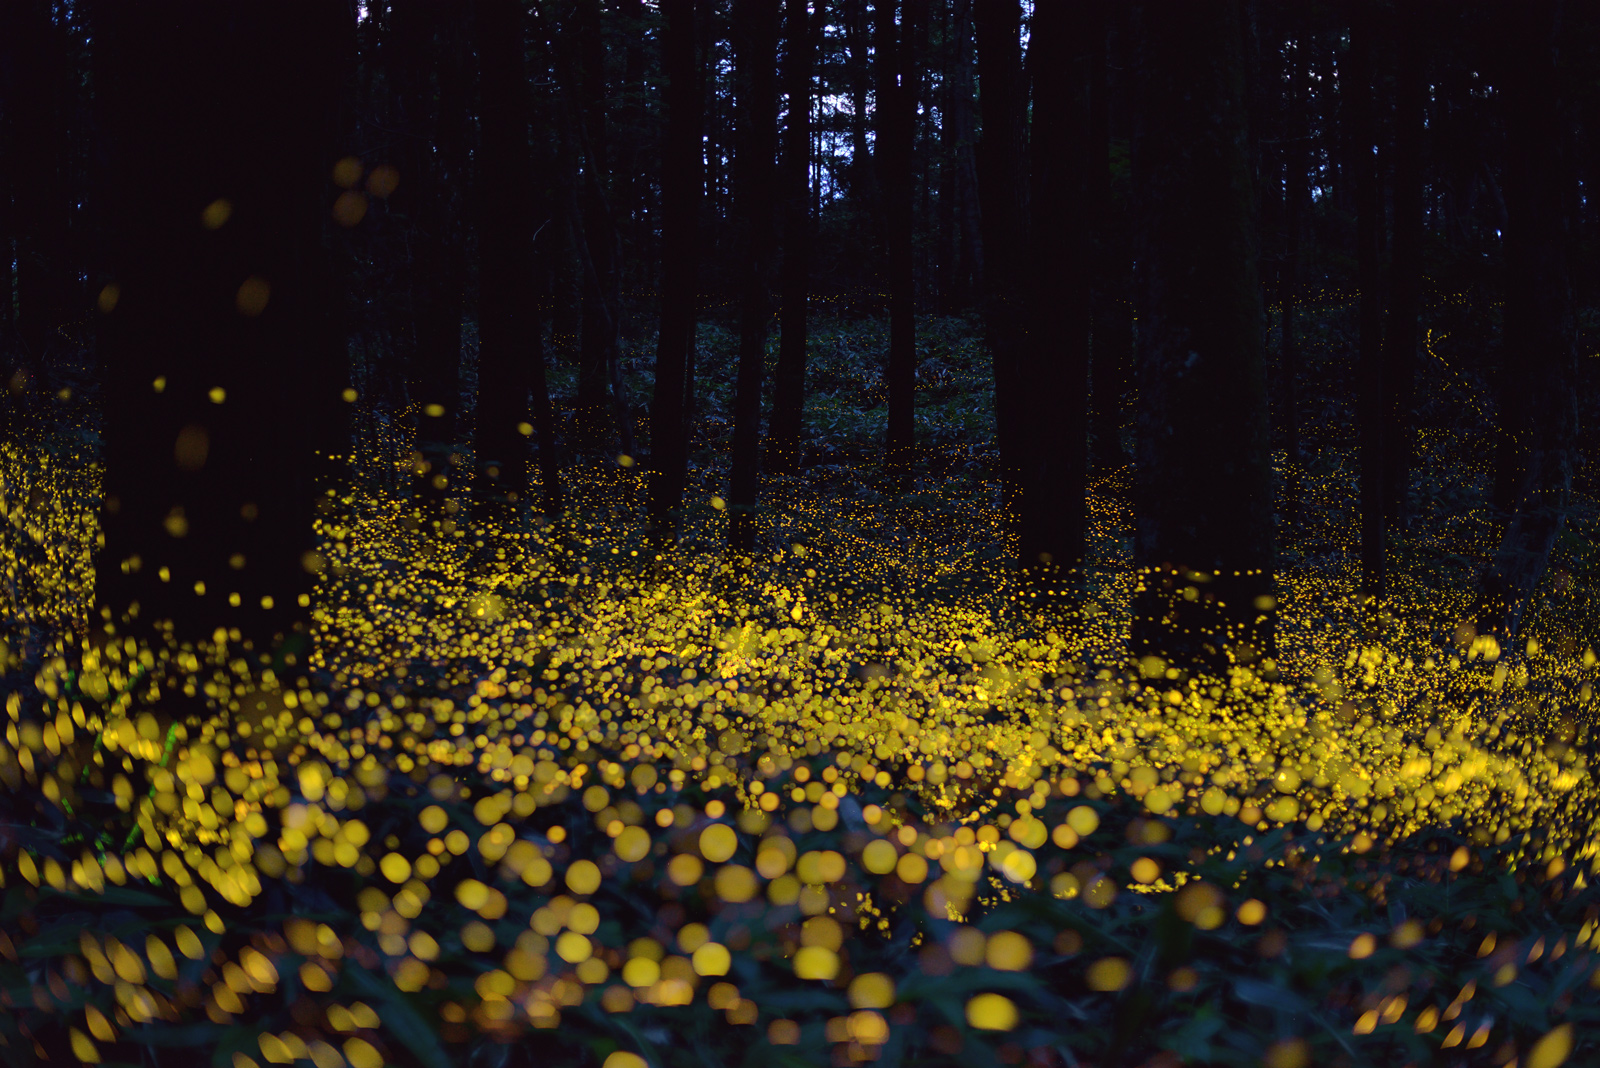 2015-Glasgow-fireflies1.jpg